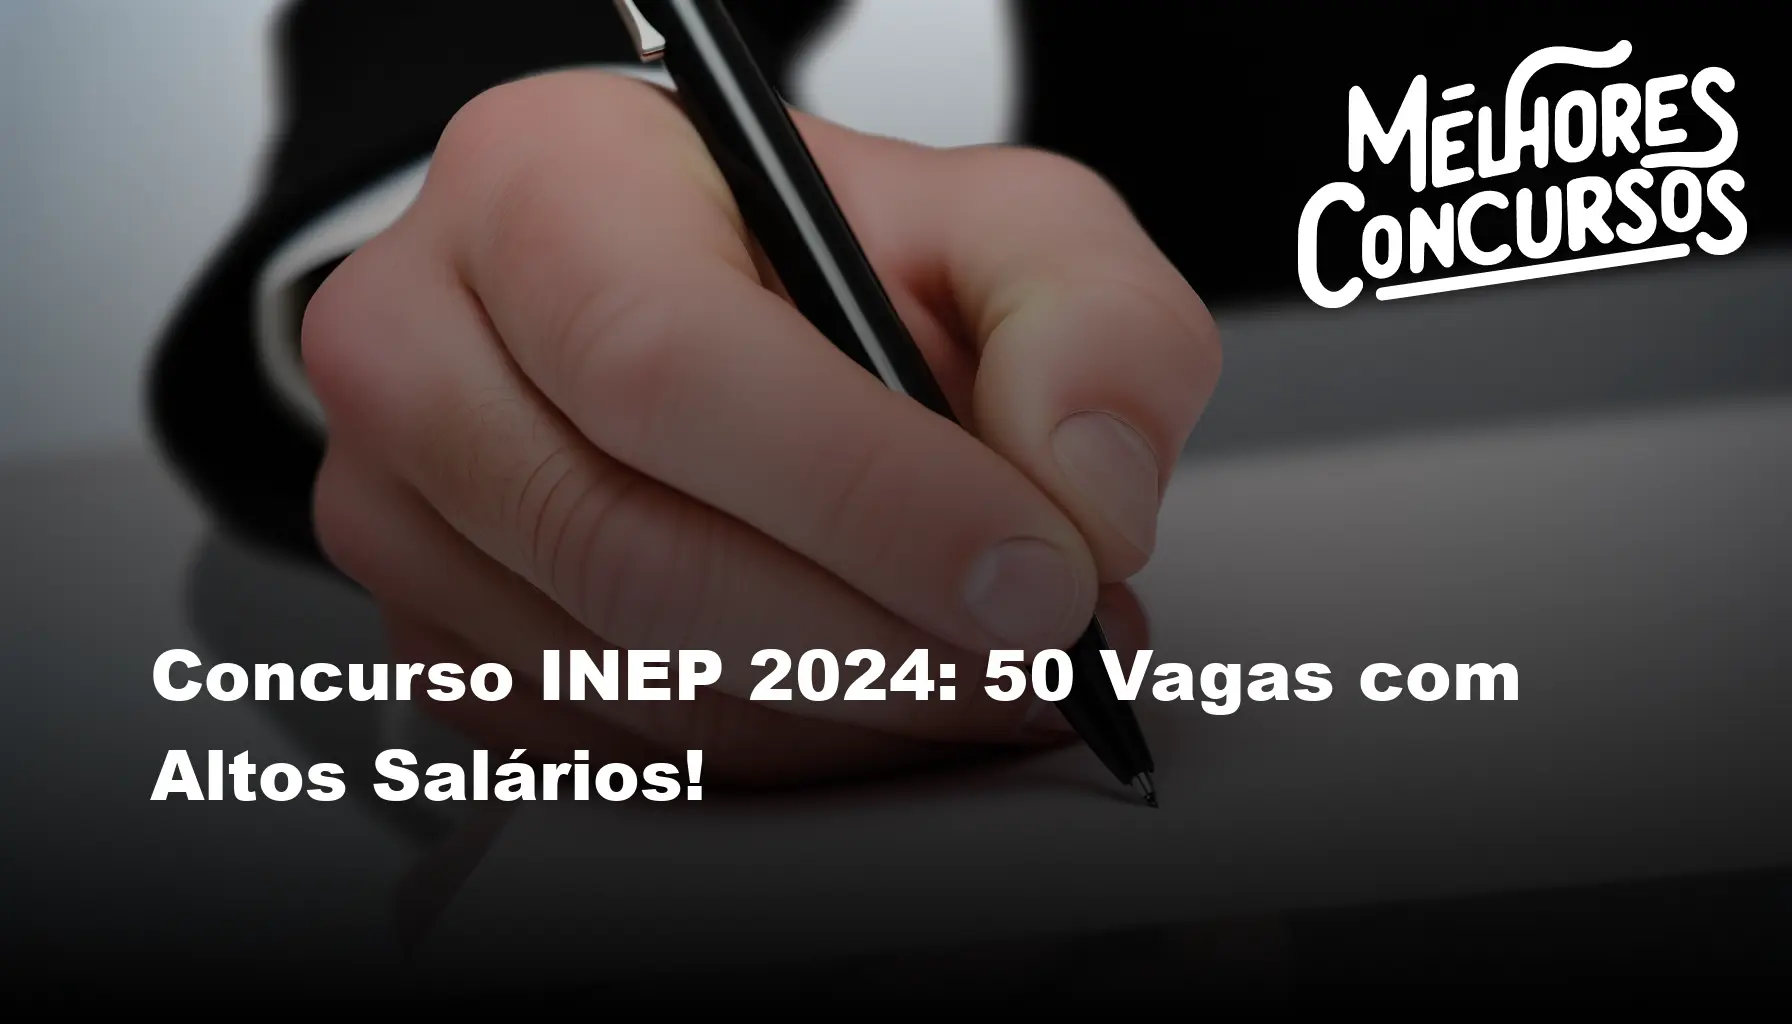 Concurso INEP 2024 50 Vagas com Altos Salários!